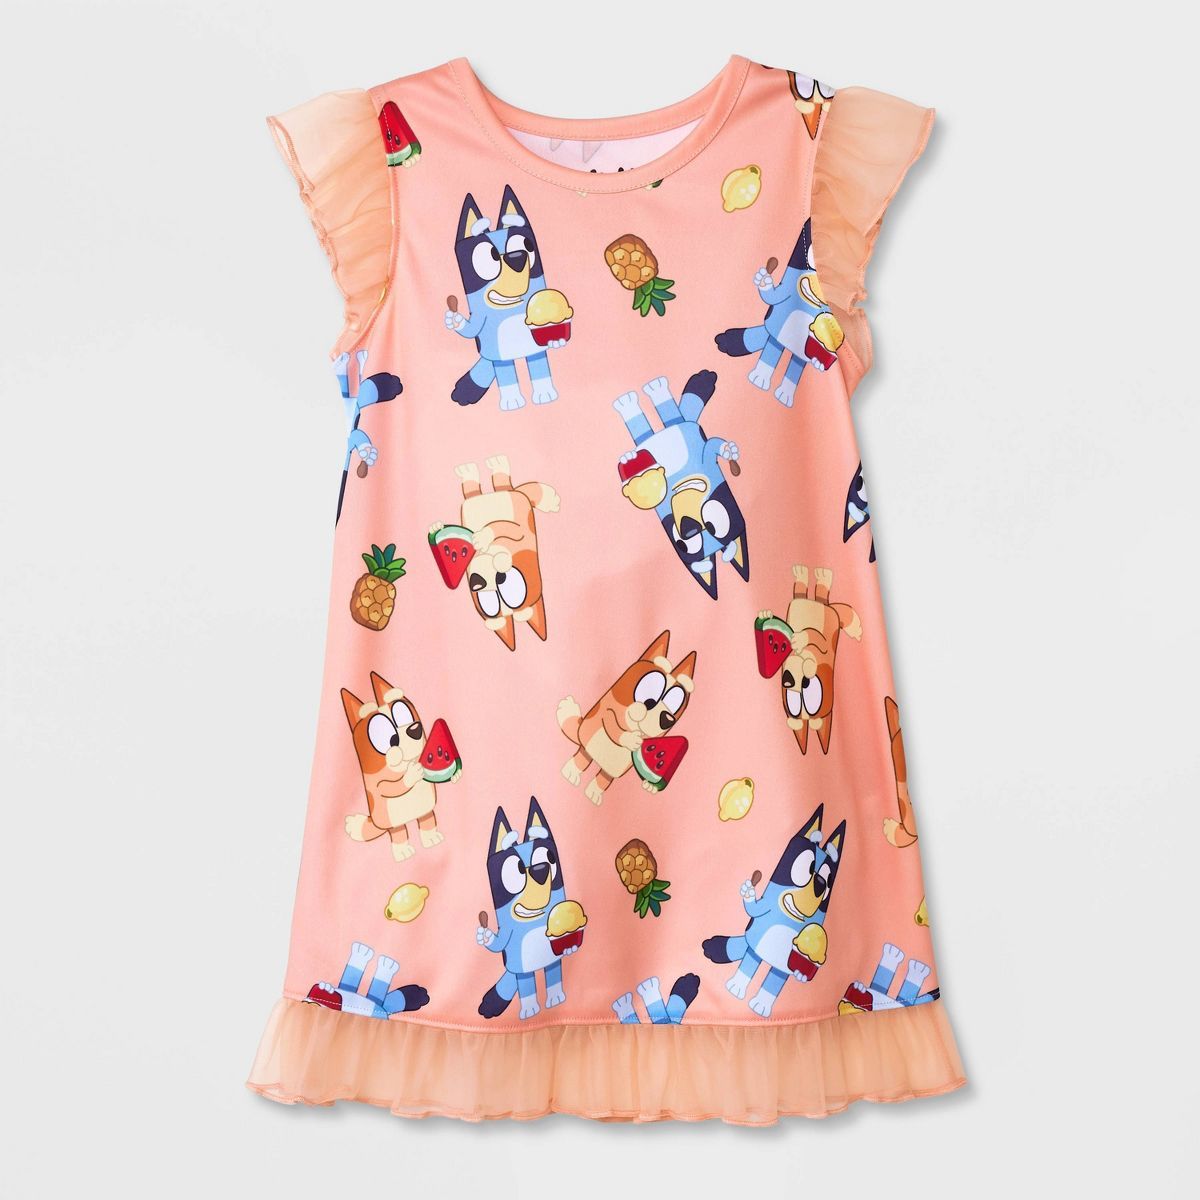 Toddler Girls' Bluey Fruit NightGown Pajama - Orange | Target